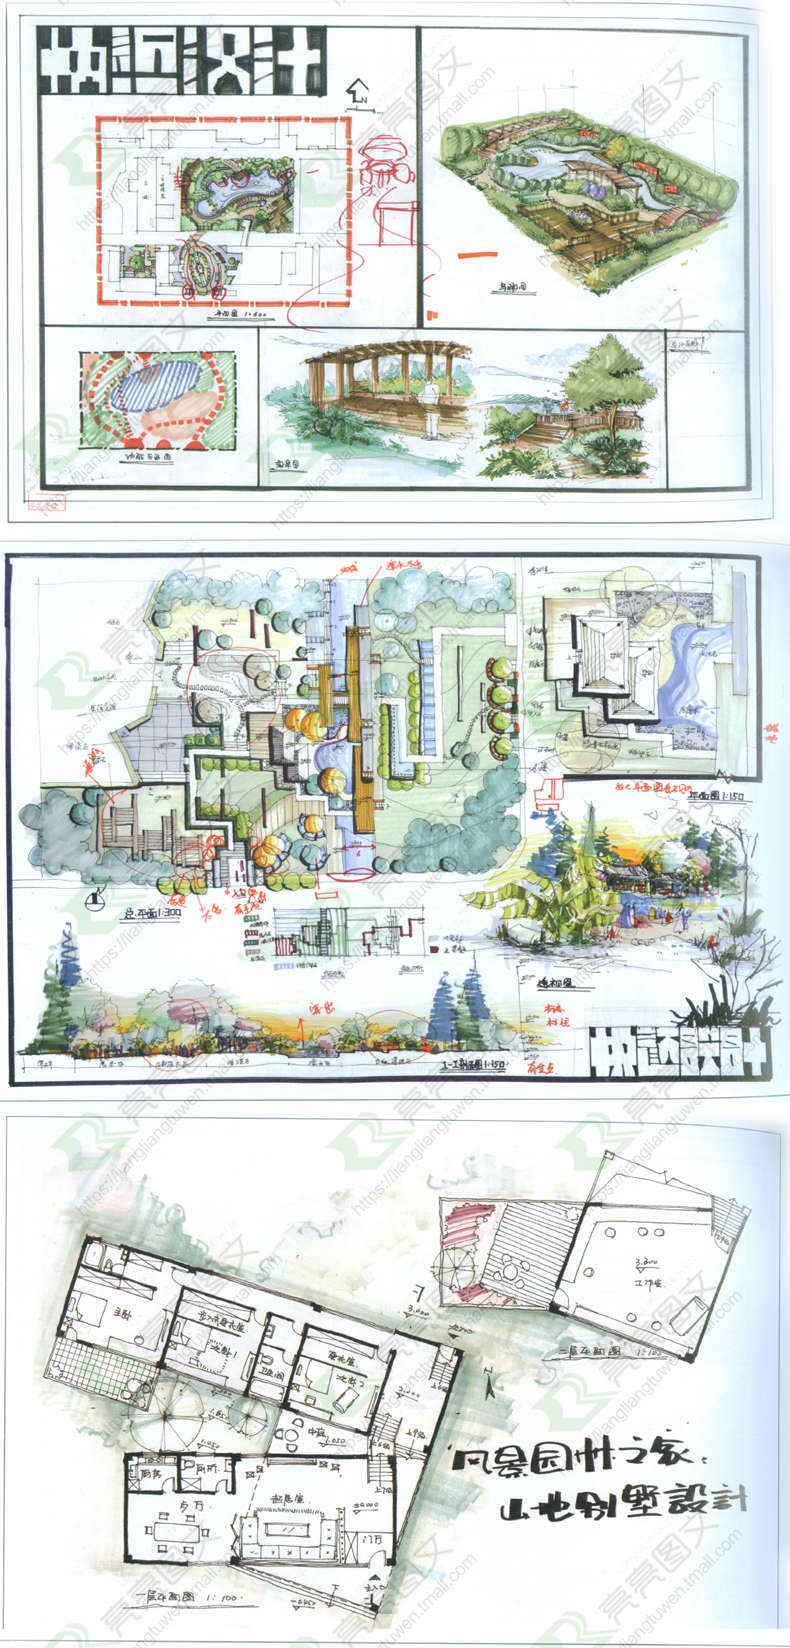 手绘快题设计方案效果图城市休闲广场/翠湖公园/绿地规划滨水景观图片